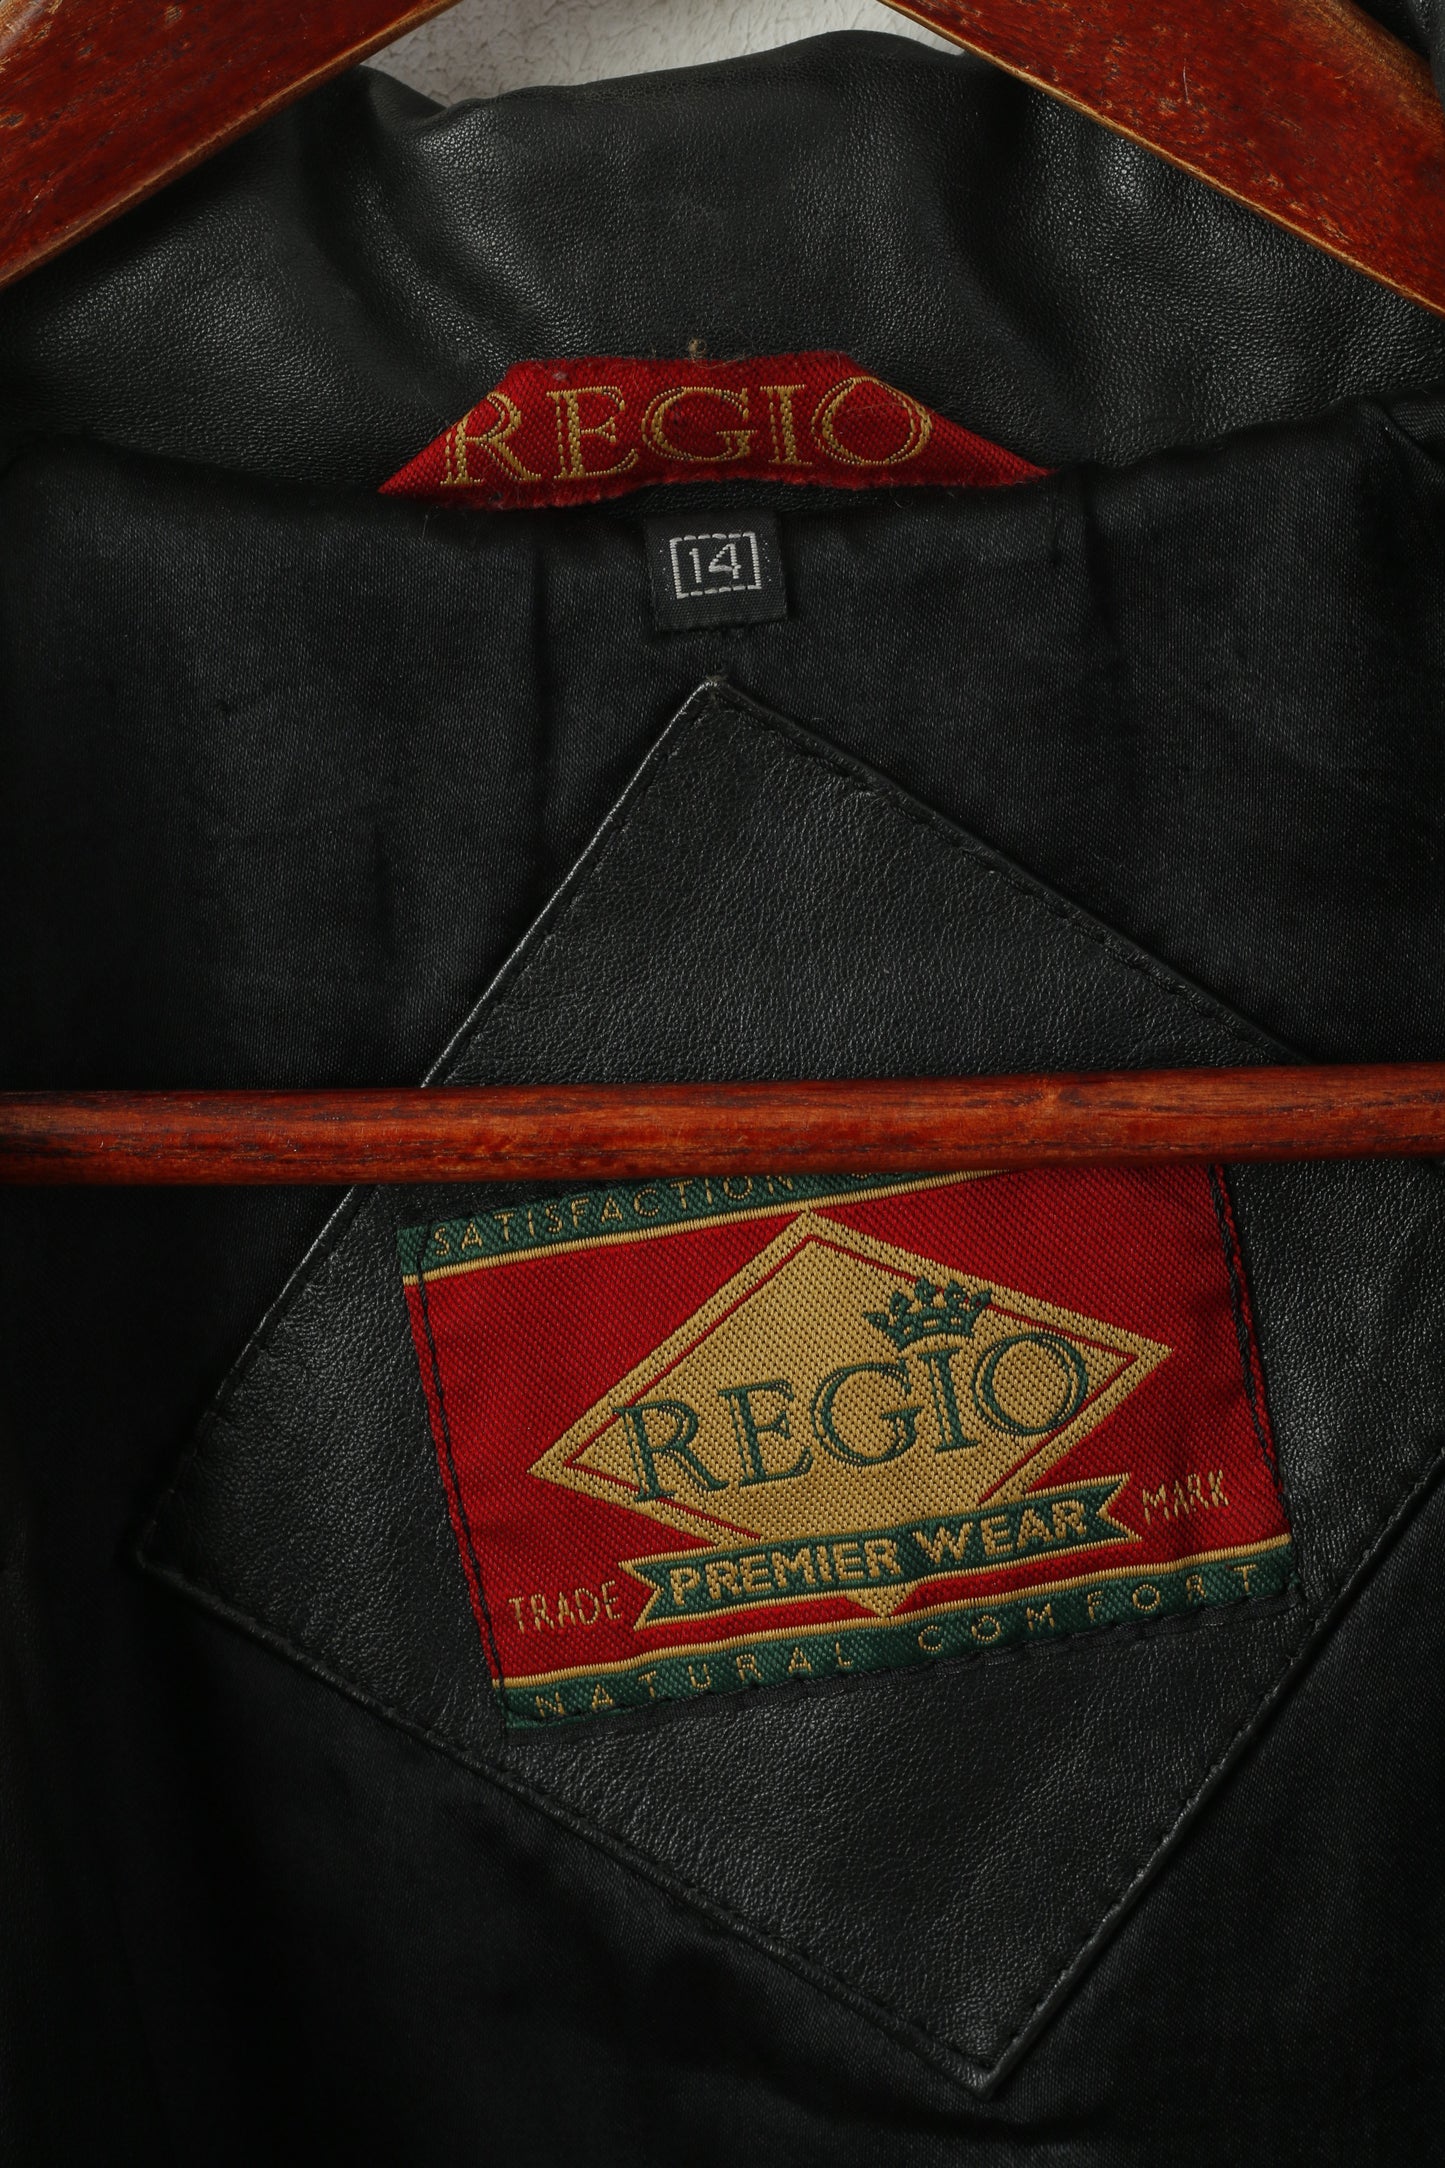 Regio Women 14 XL Jacket Black Leather Premier Wear Double Breasted Vintage Coat